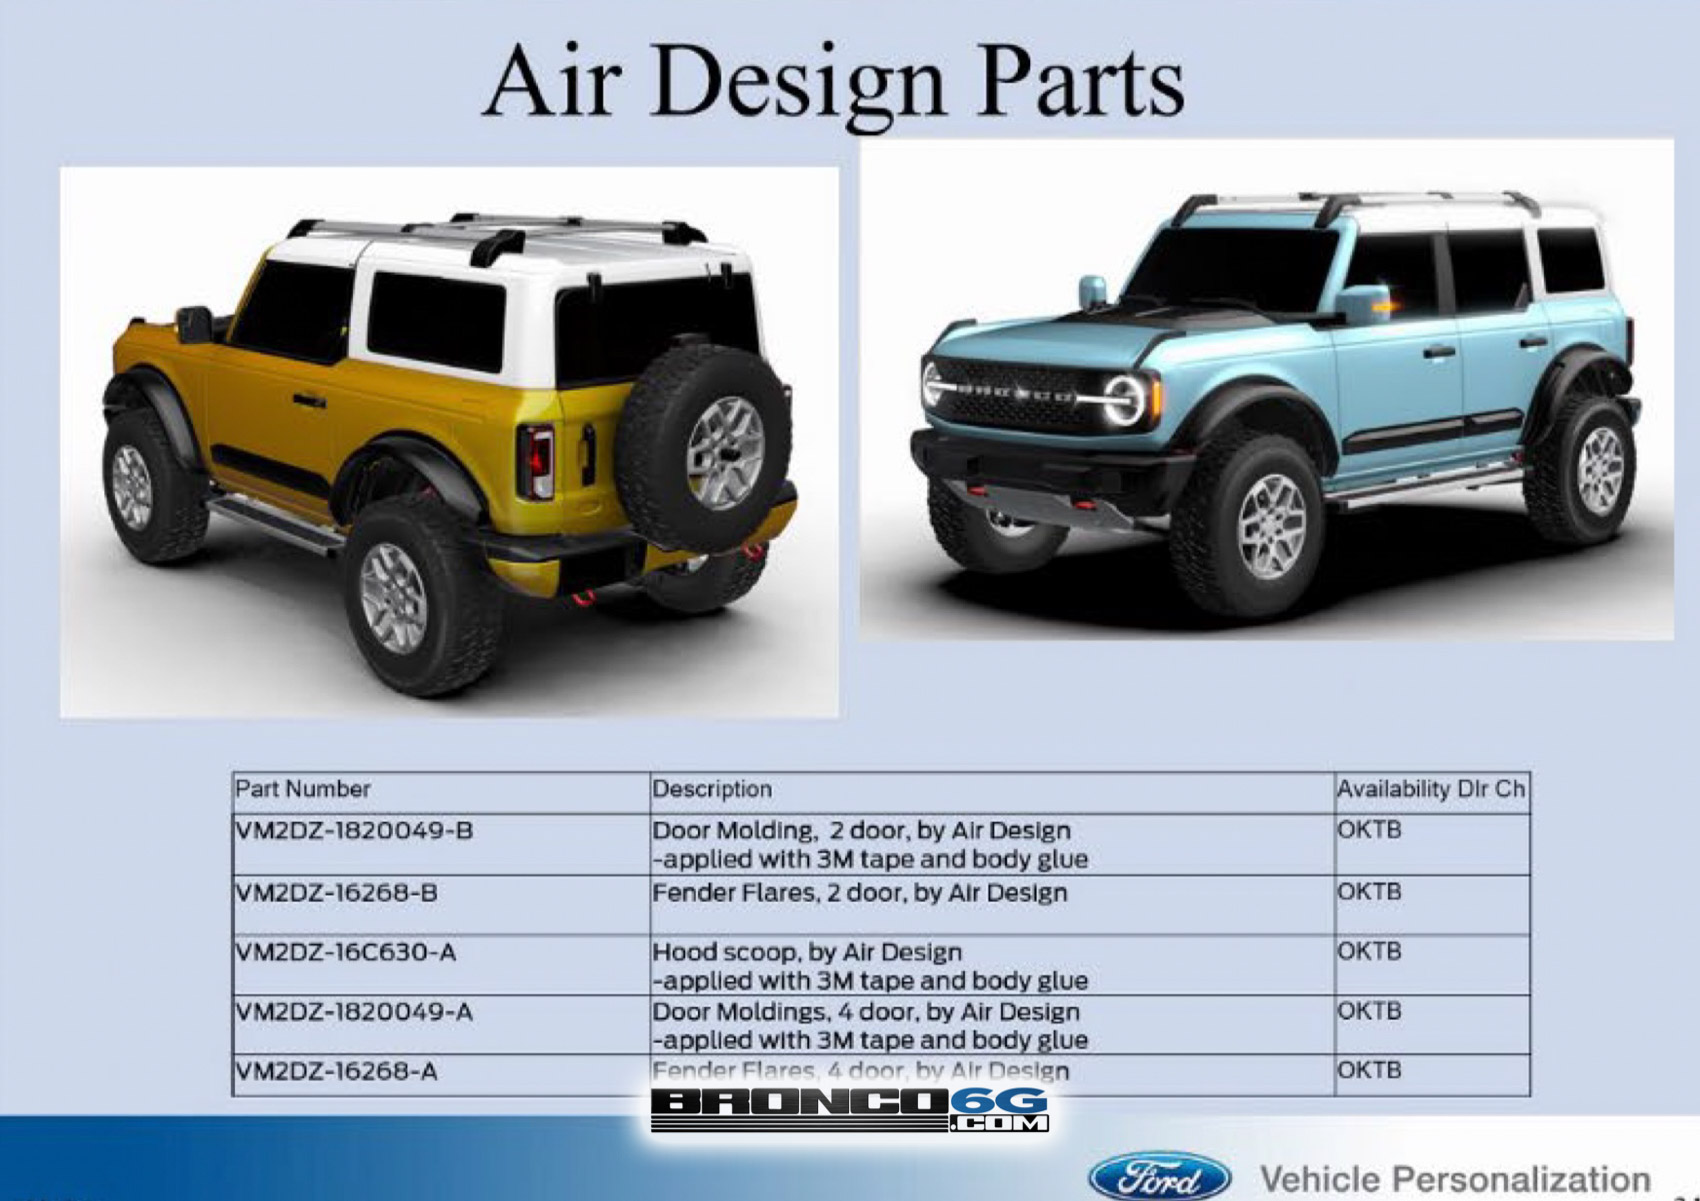 2021 Bronco Air Design Parts - Door Molding, Hood Scoop, Fender Flares - Ford Performance OEM ...jpg